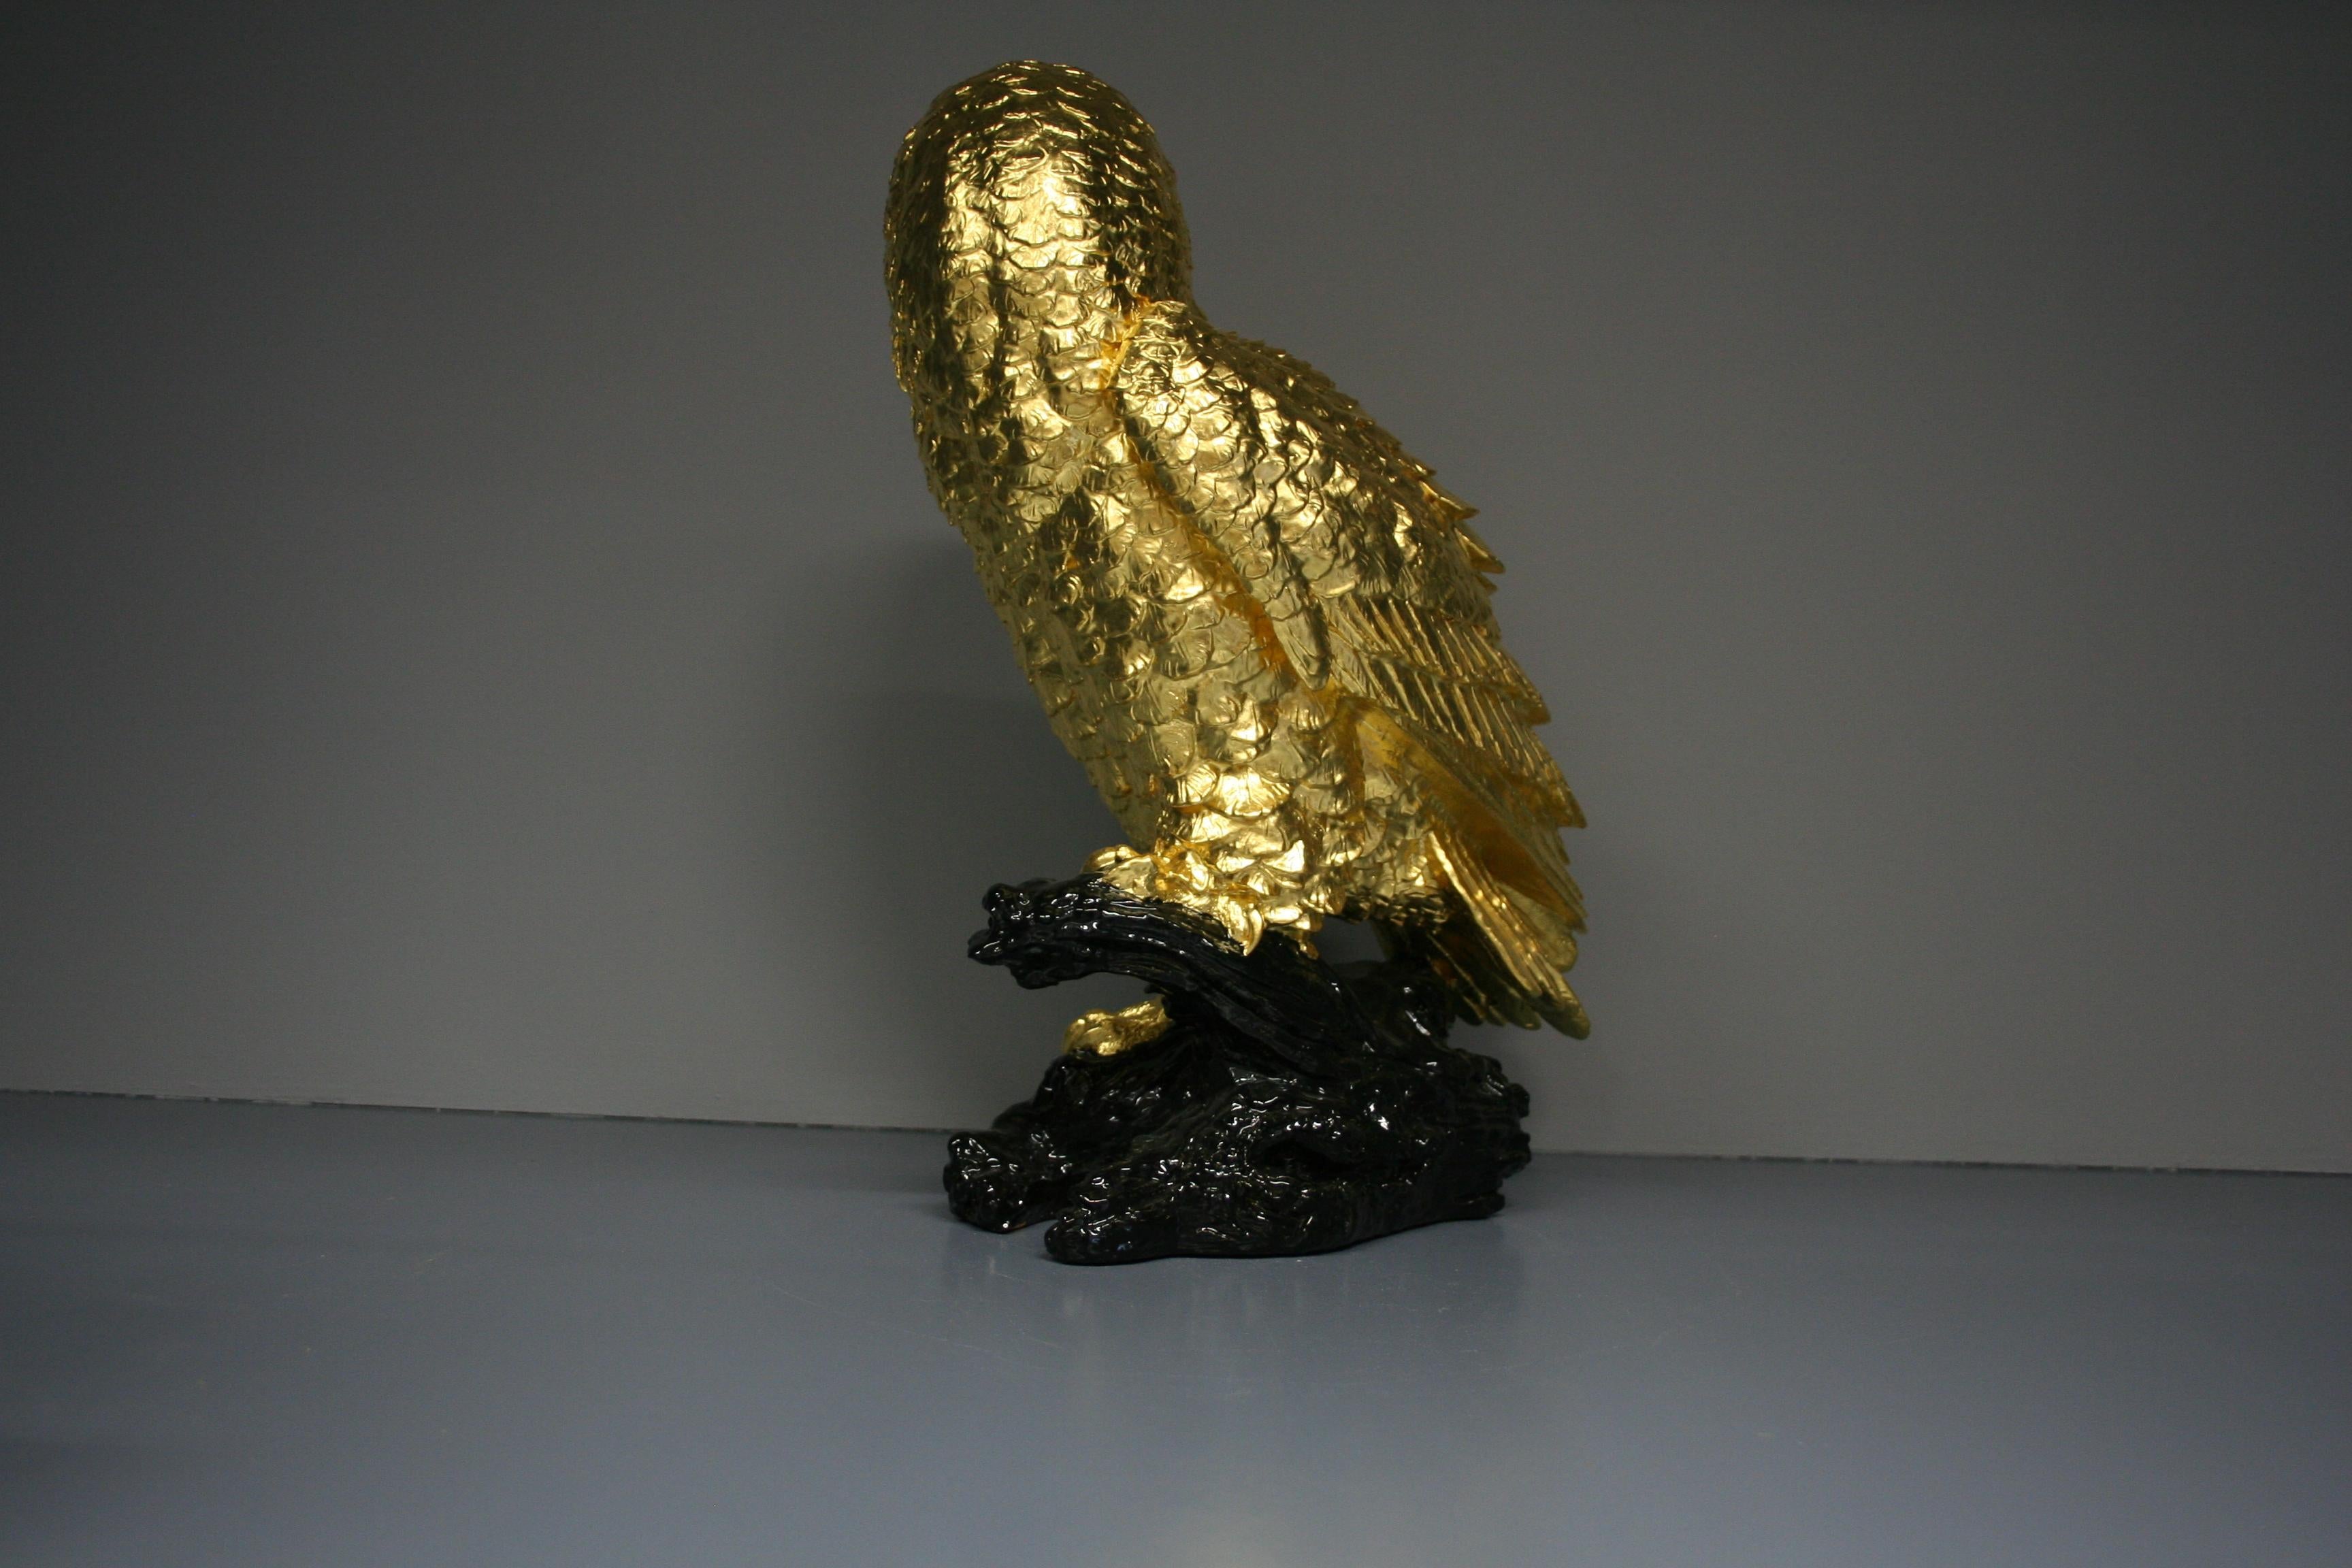 Hibou traditionnel plaqué or avec feuille d'or 24k. Ce hibou peut être placé aussi bien à l'extérieur qu'à l'intérieur. Les dimensions sont d'environ 42 x 16 x 30 cm.